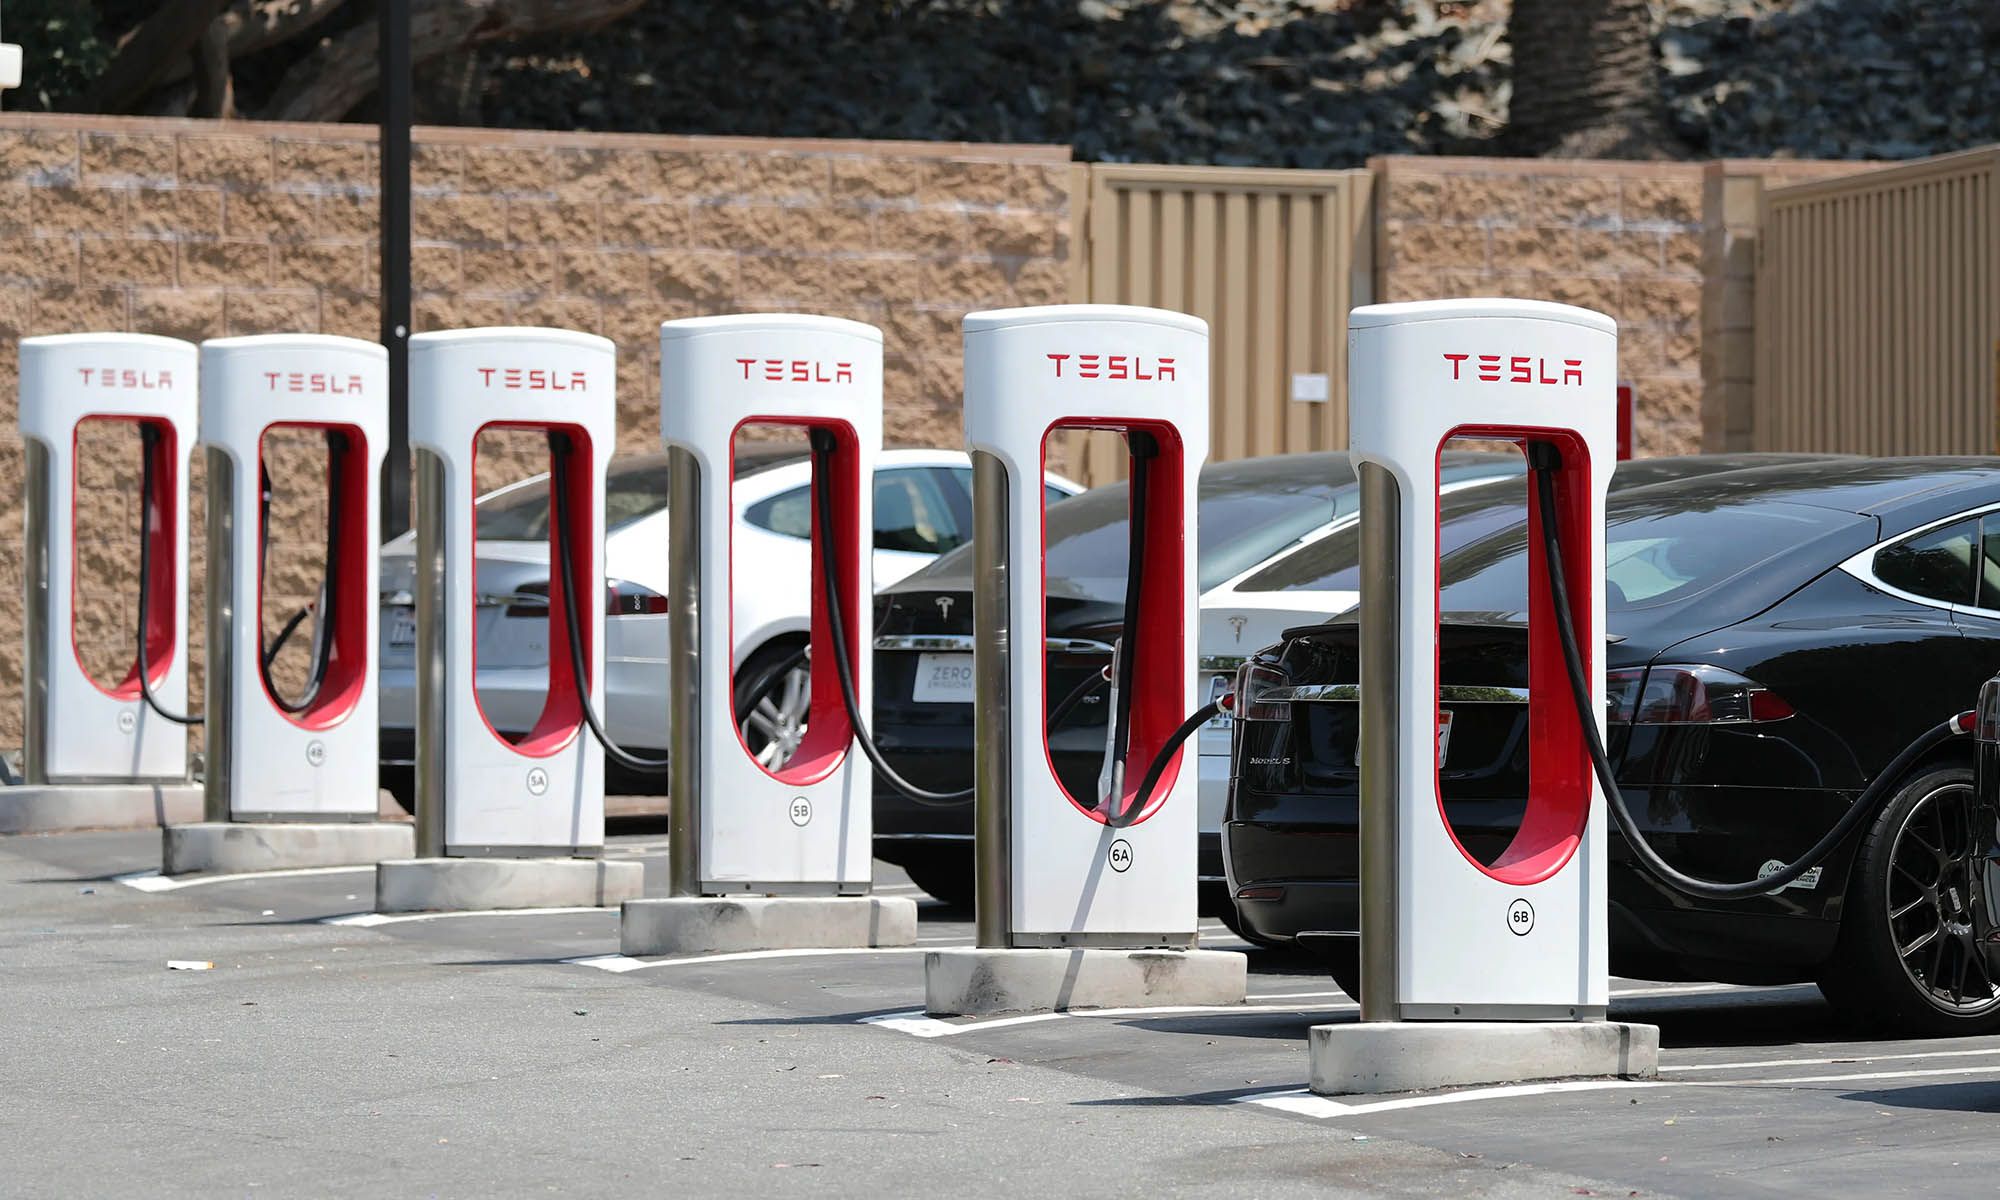 Tesla continúa incrementando el número de supercargadores en los que permite recargar a cualquier coche eléctrico.